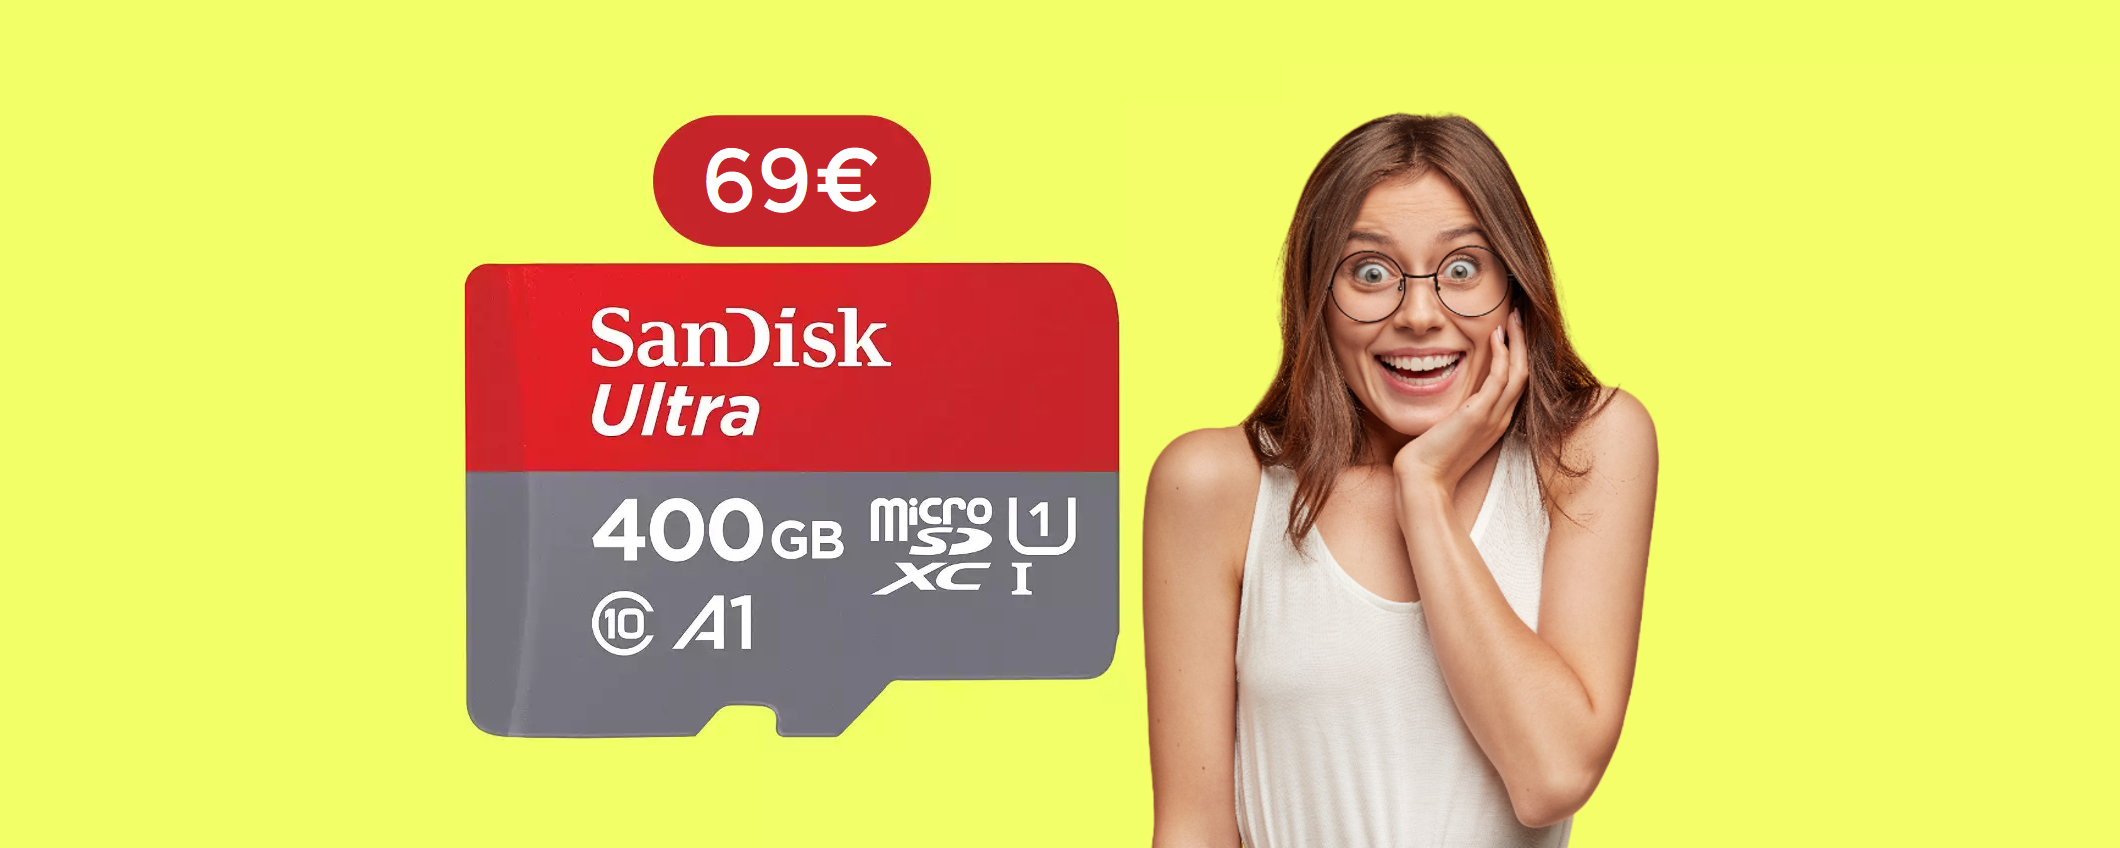 MicroSD 400GB: memoria INTERMINABILE ad un prezzo ridicolo